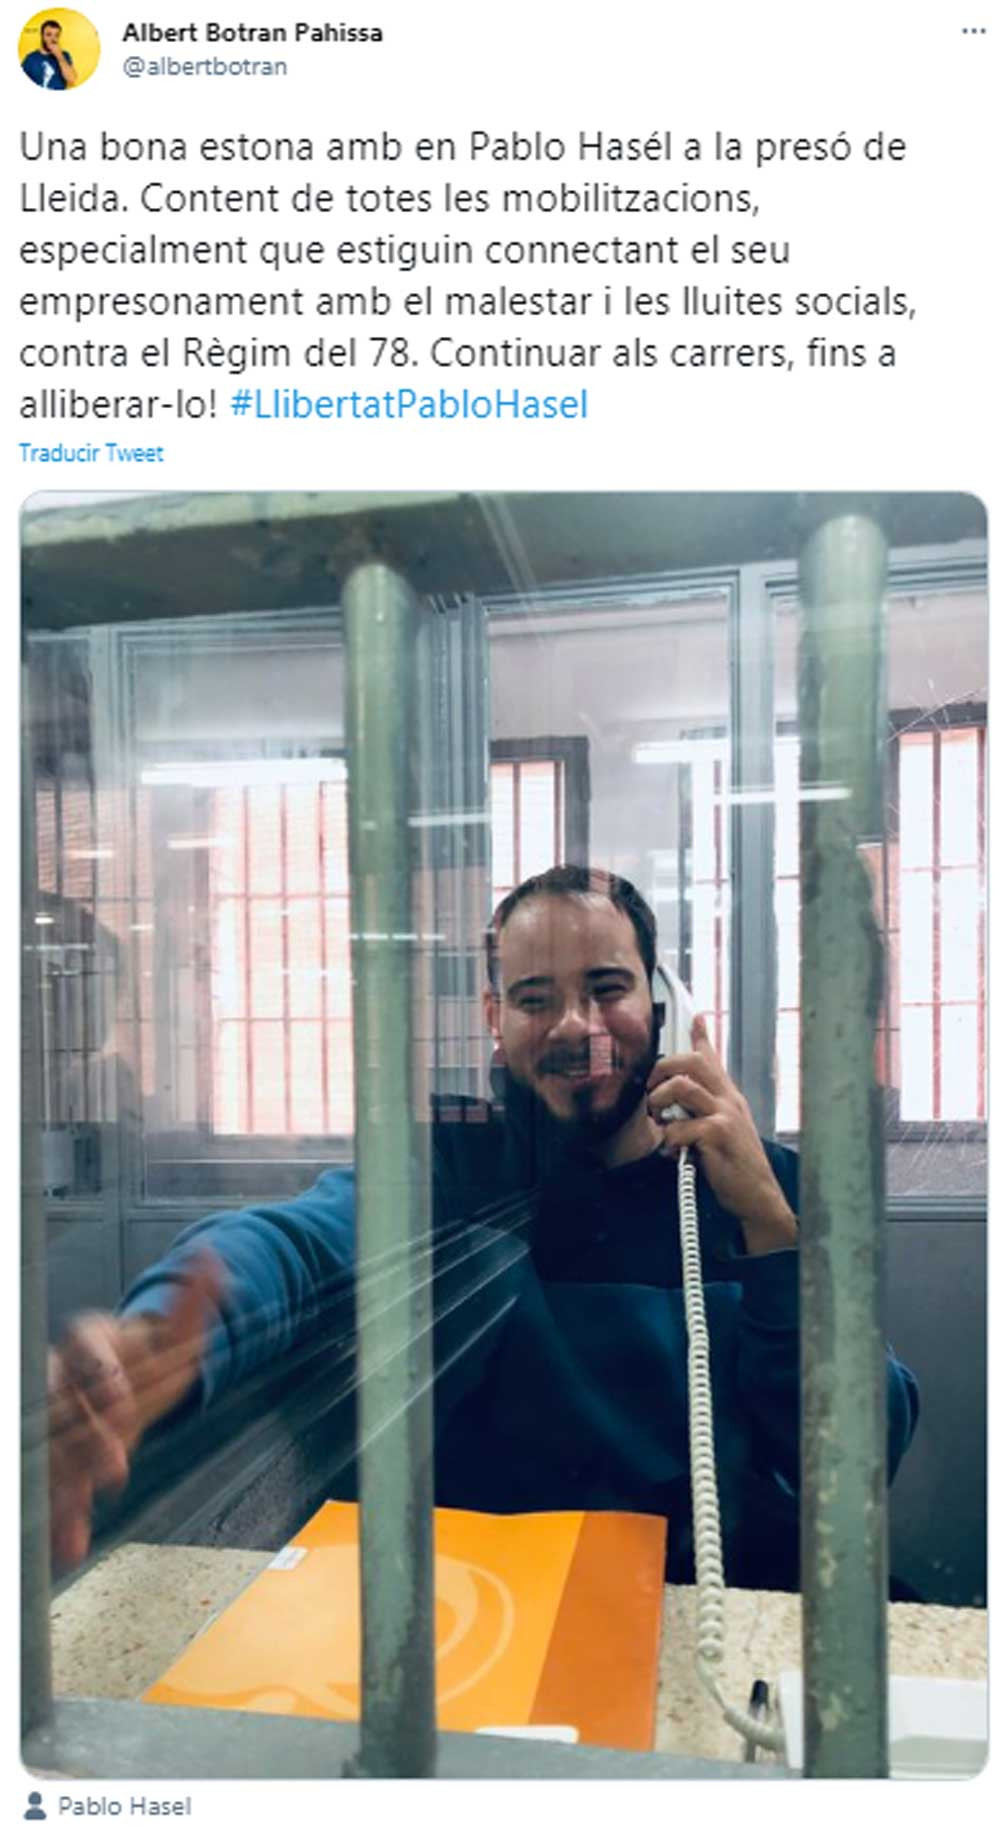 Tuit de Albert Botran sobre su visita a Pablo Hasél en la cárcel / TWITTER